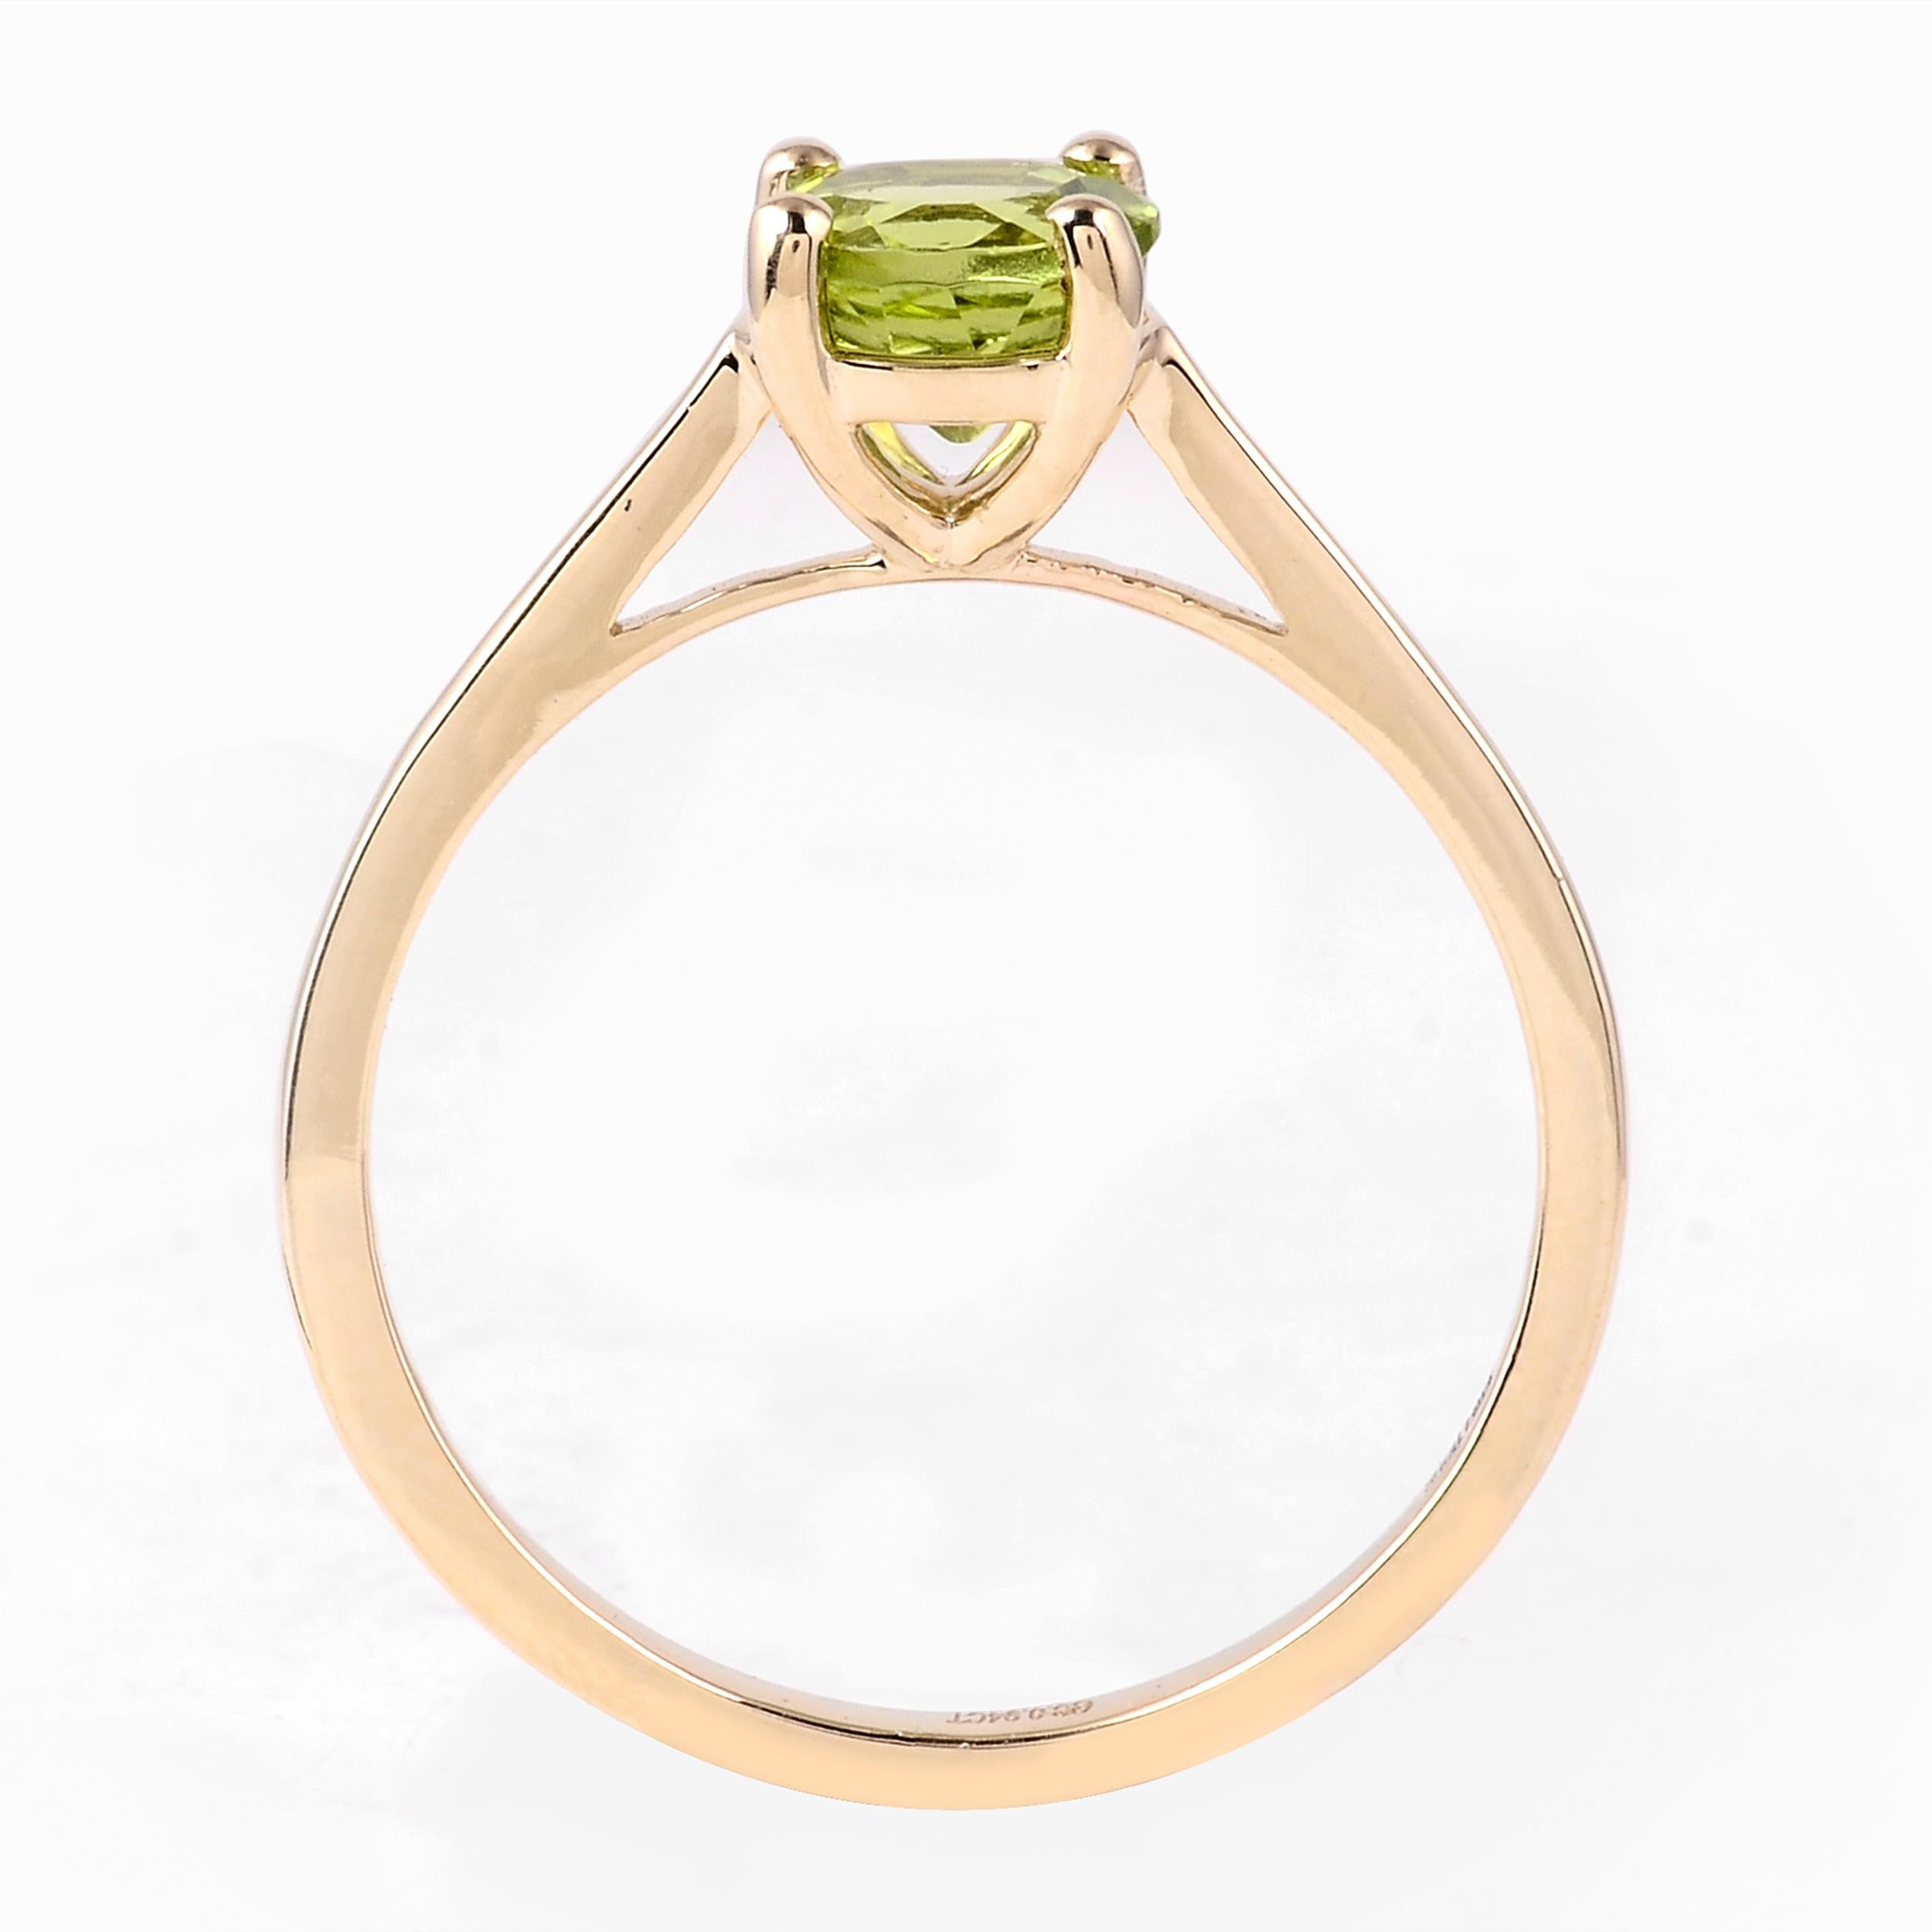 Eleva tu colección de joyas con el encantador encanto del Anillo Armonía de Peridoto Verde. Como marca profundamente arraigada en la celebración de las maravillas de la naturaleza, presentamos este exquisito anillo como una armoniosa oda a las